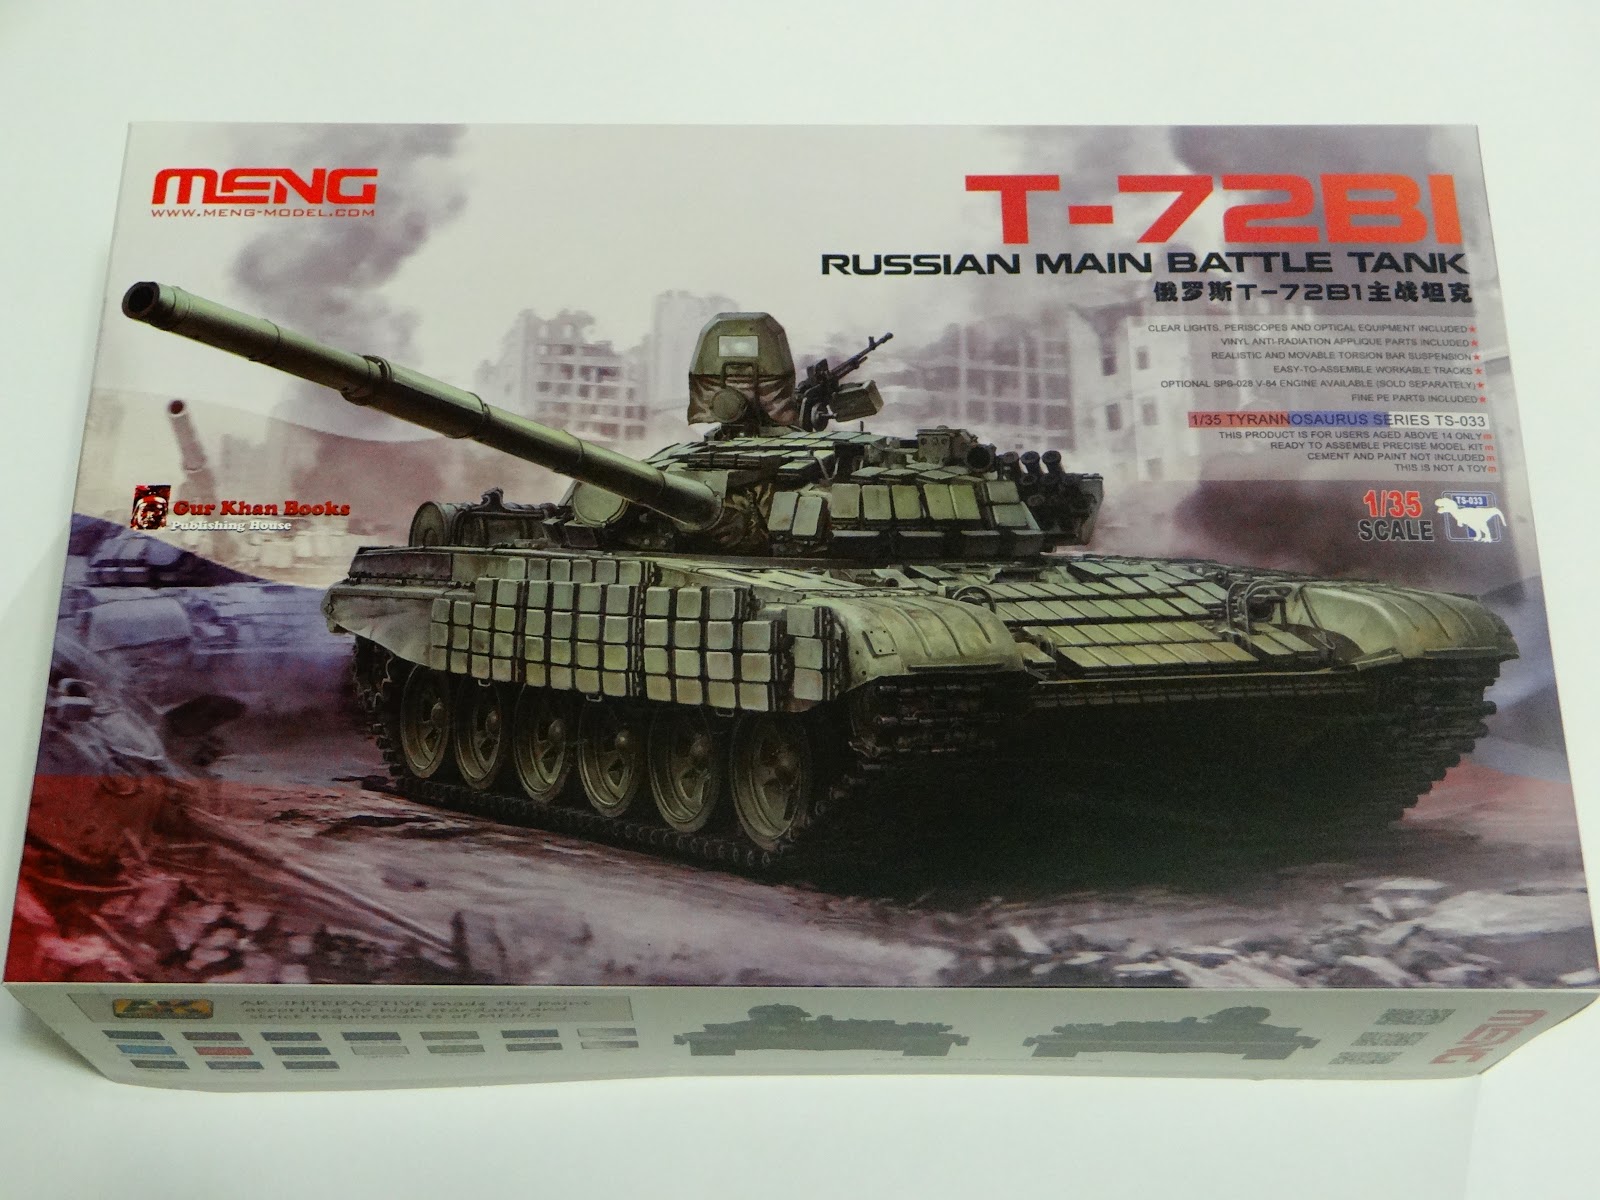 Meng Model 1 35 Ts 033 Russina Main Battle Tank T 72b1 Toys Games Toys Games Model Kits